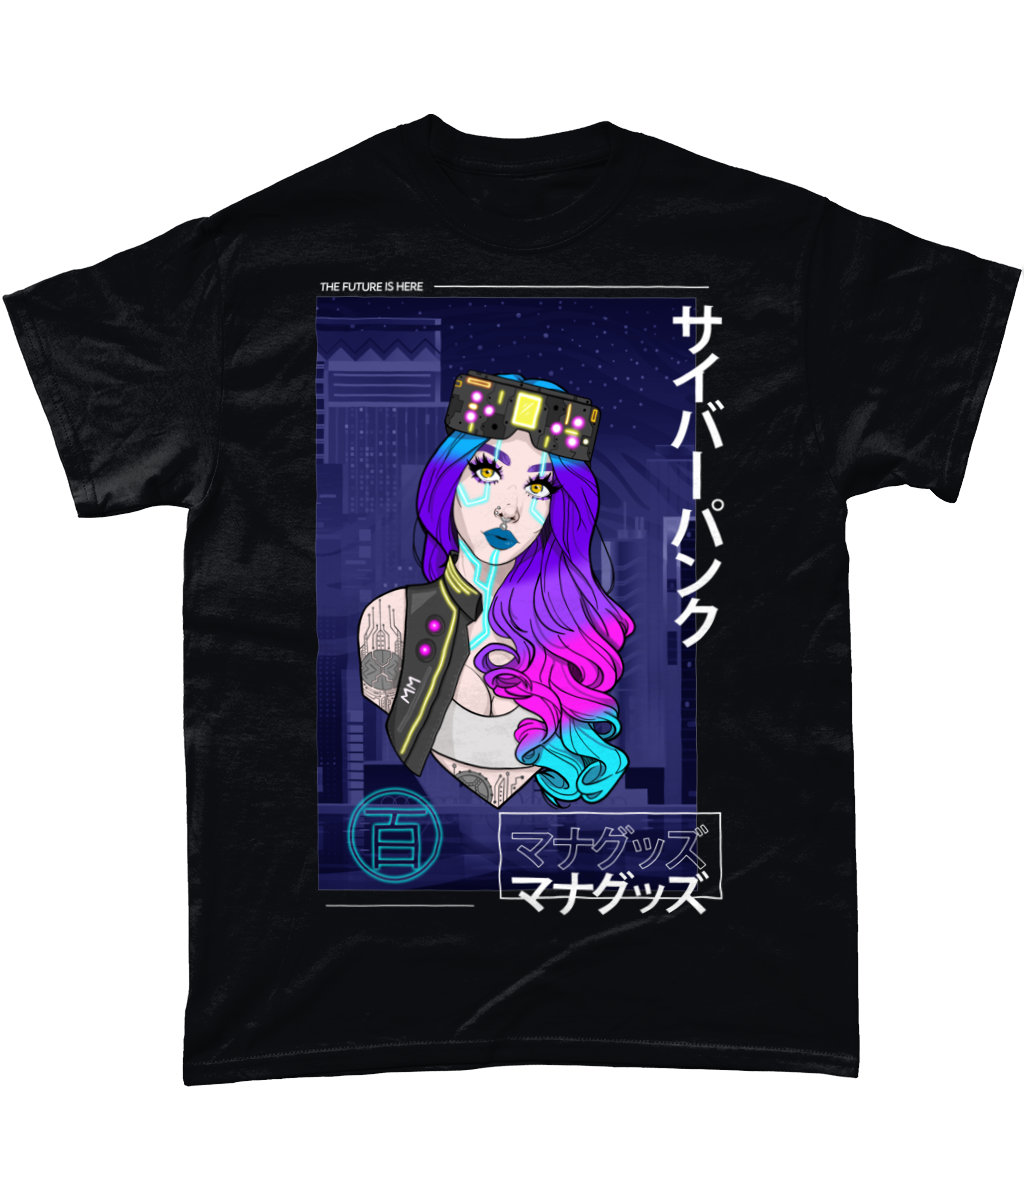 Cyberpunk Girl T-Shirt